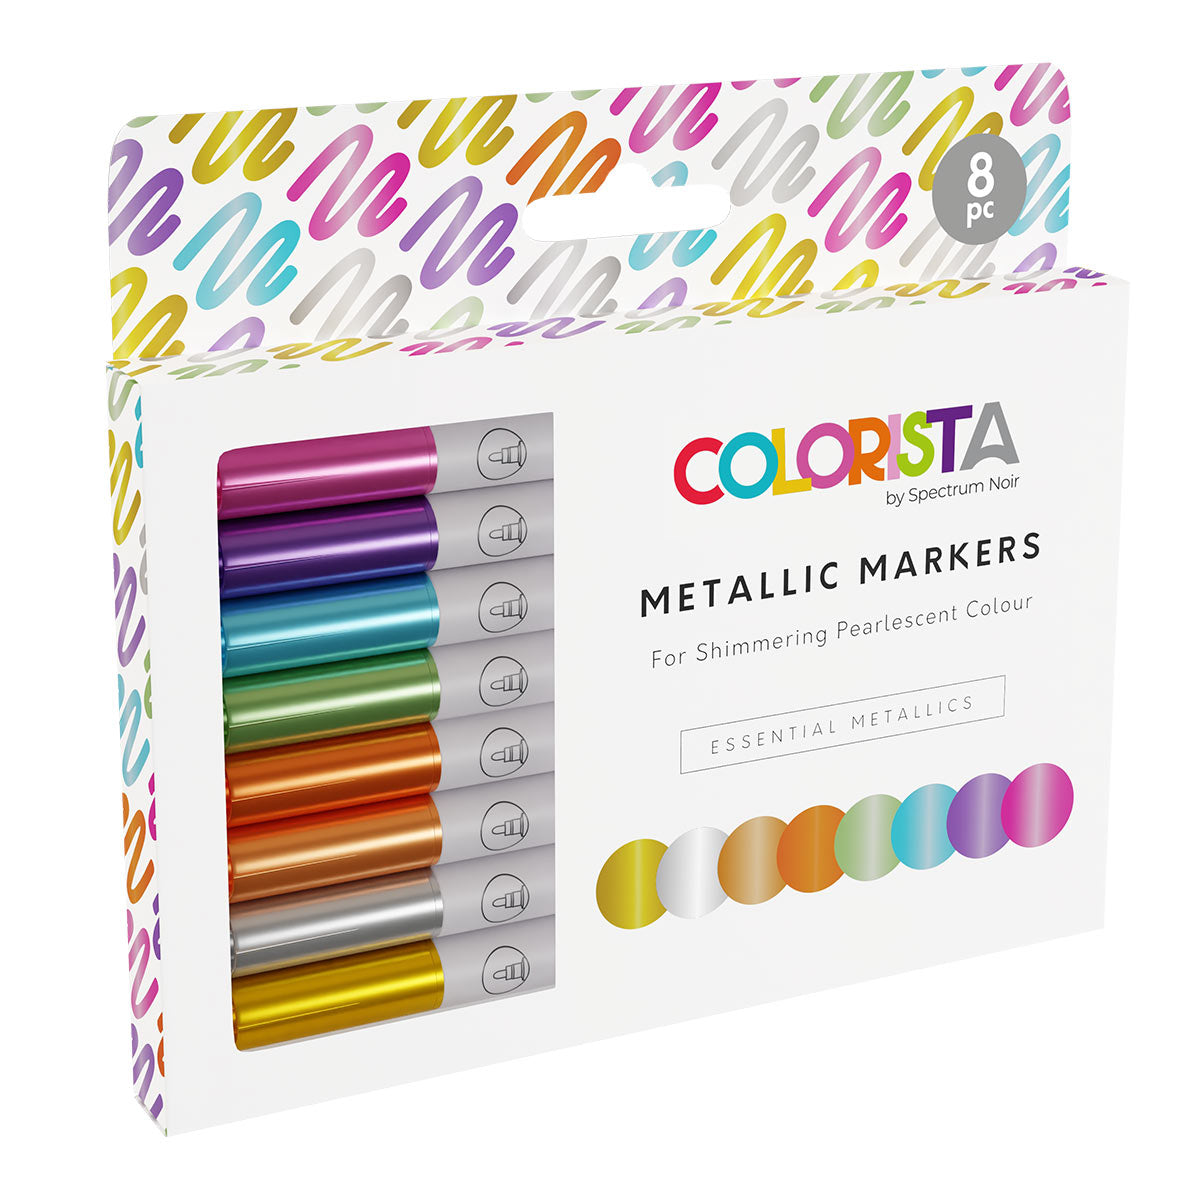 Spectrum noir colorista - Metallic markers (8 set) Essentiële metallics